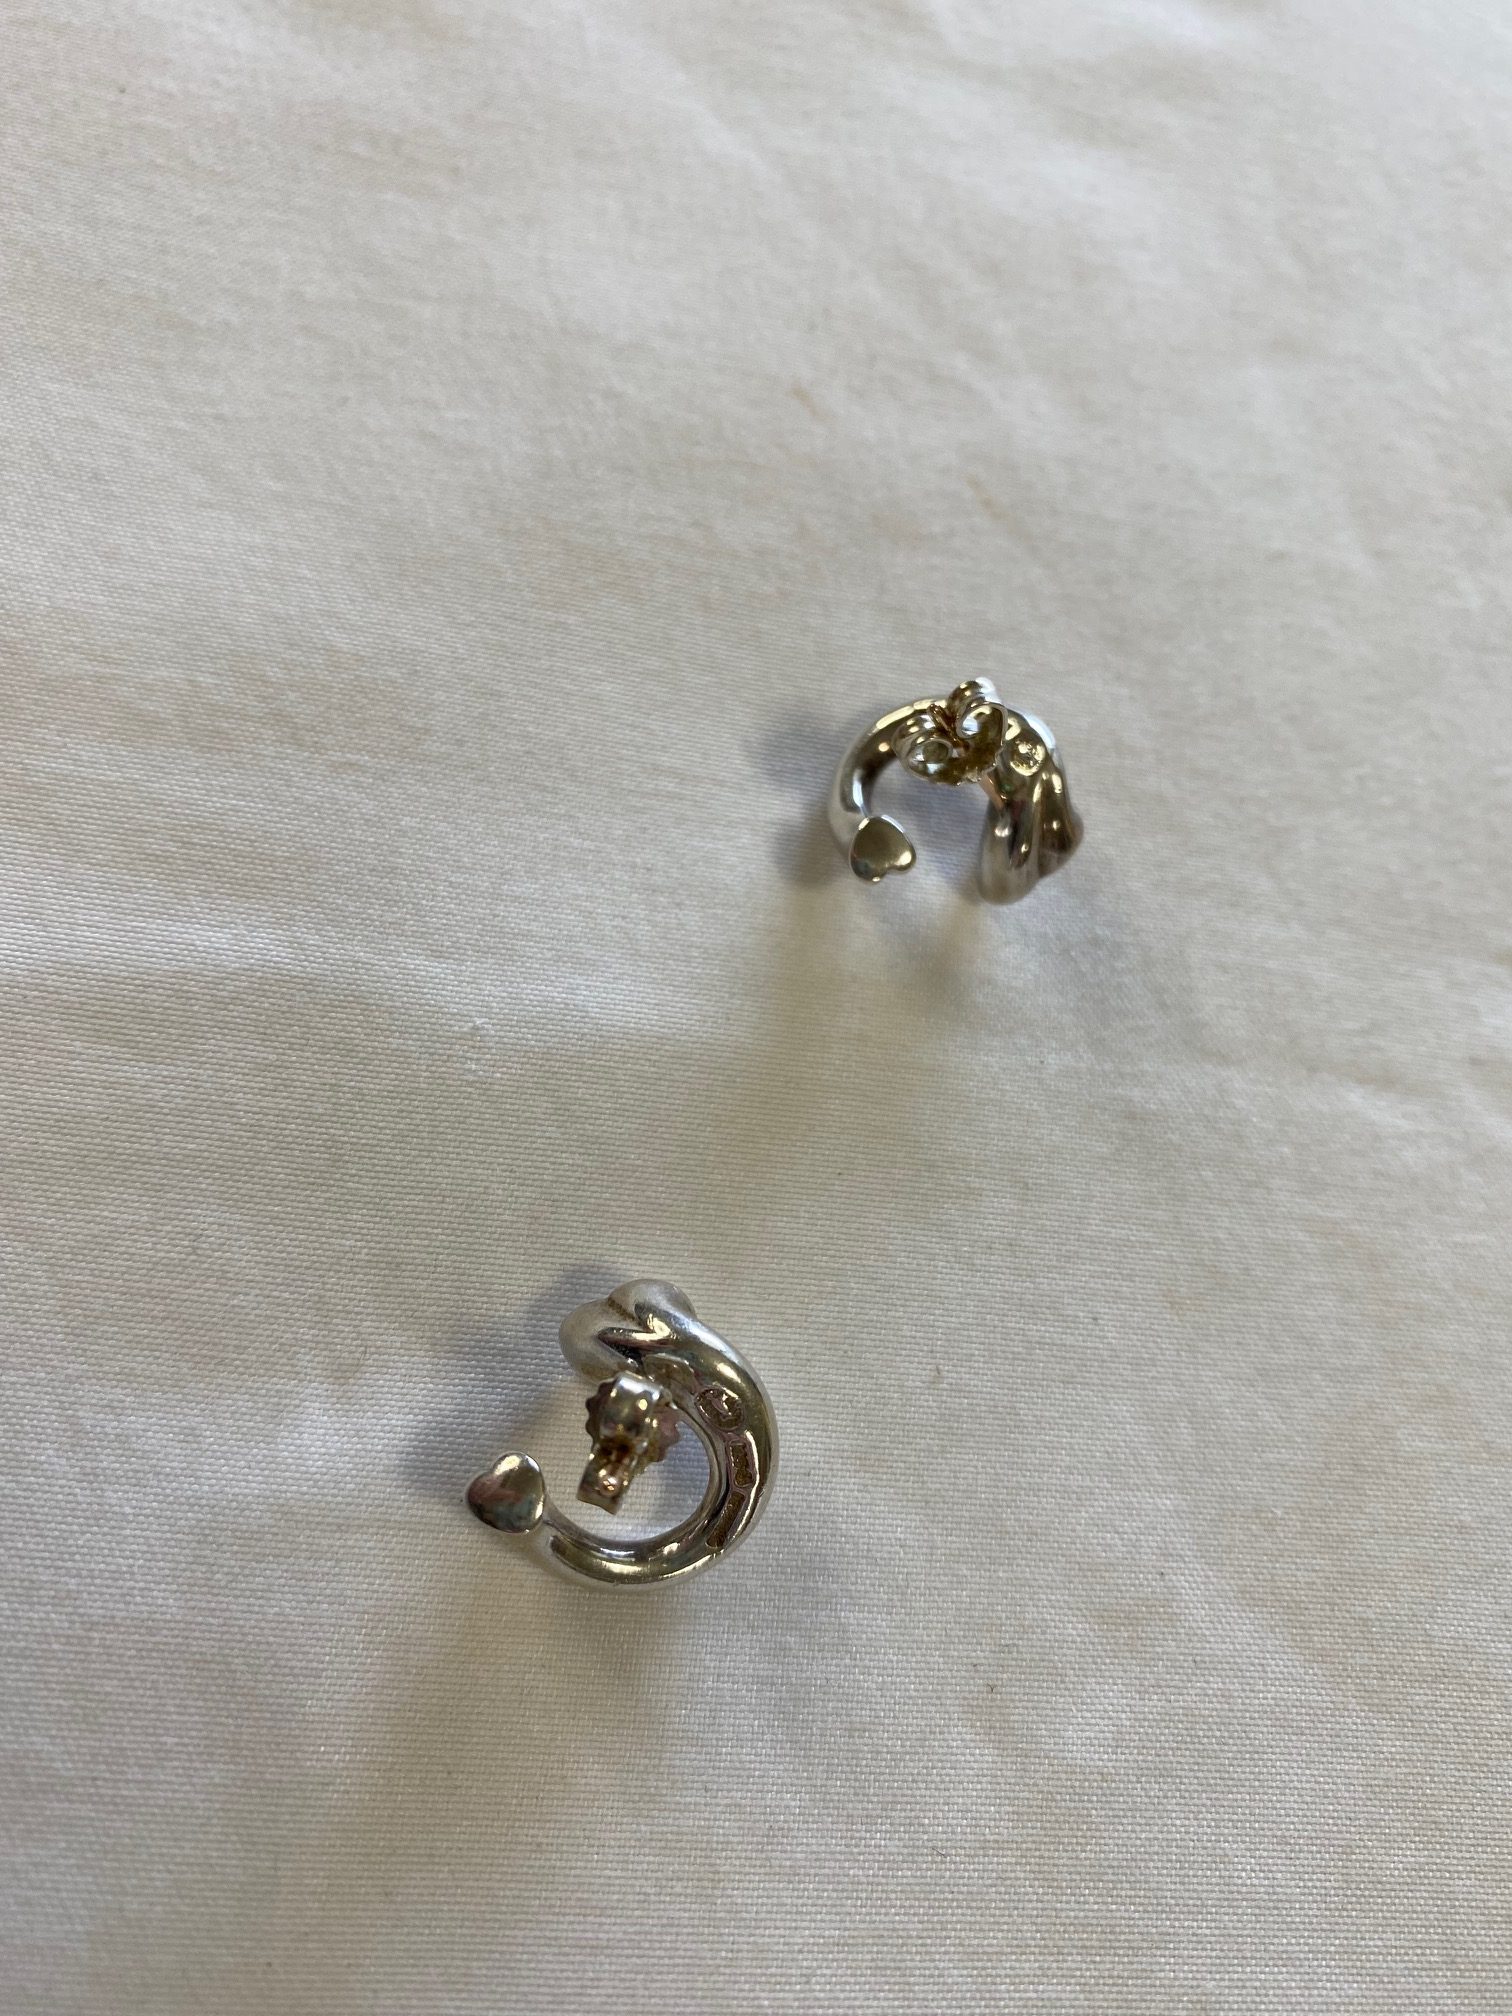 Denmark Stamped Sterling Silver Heart Wrap Pierced Earrings